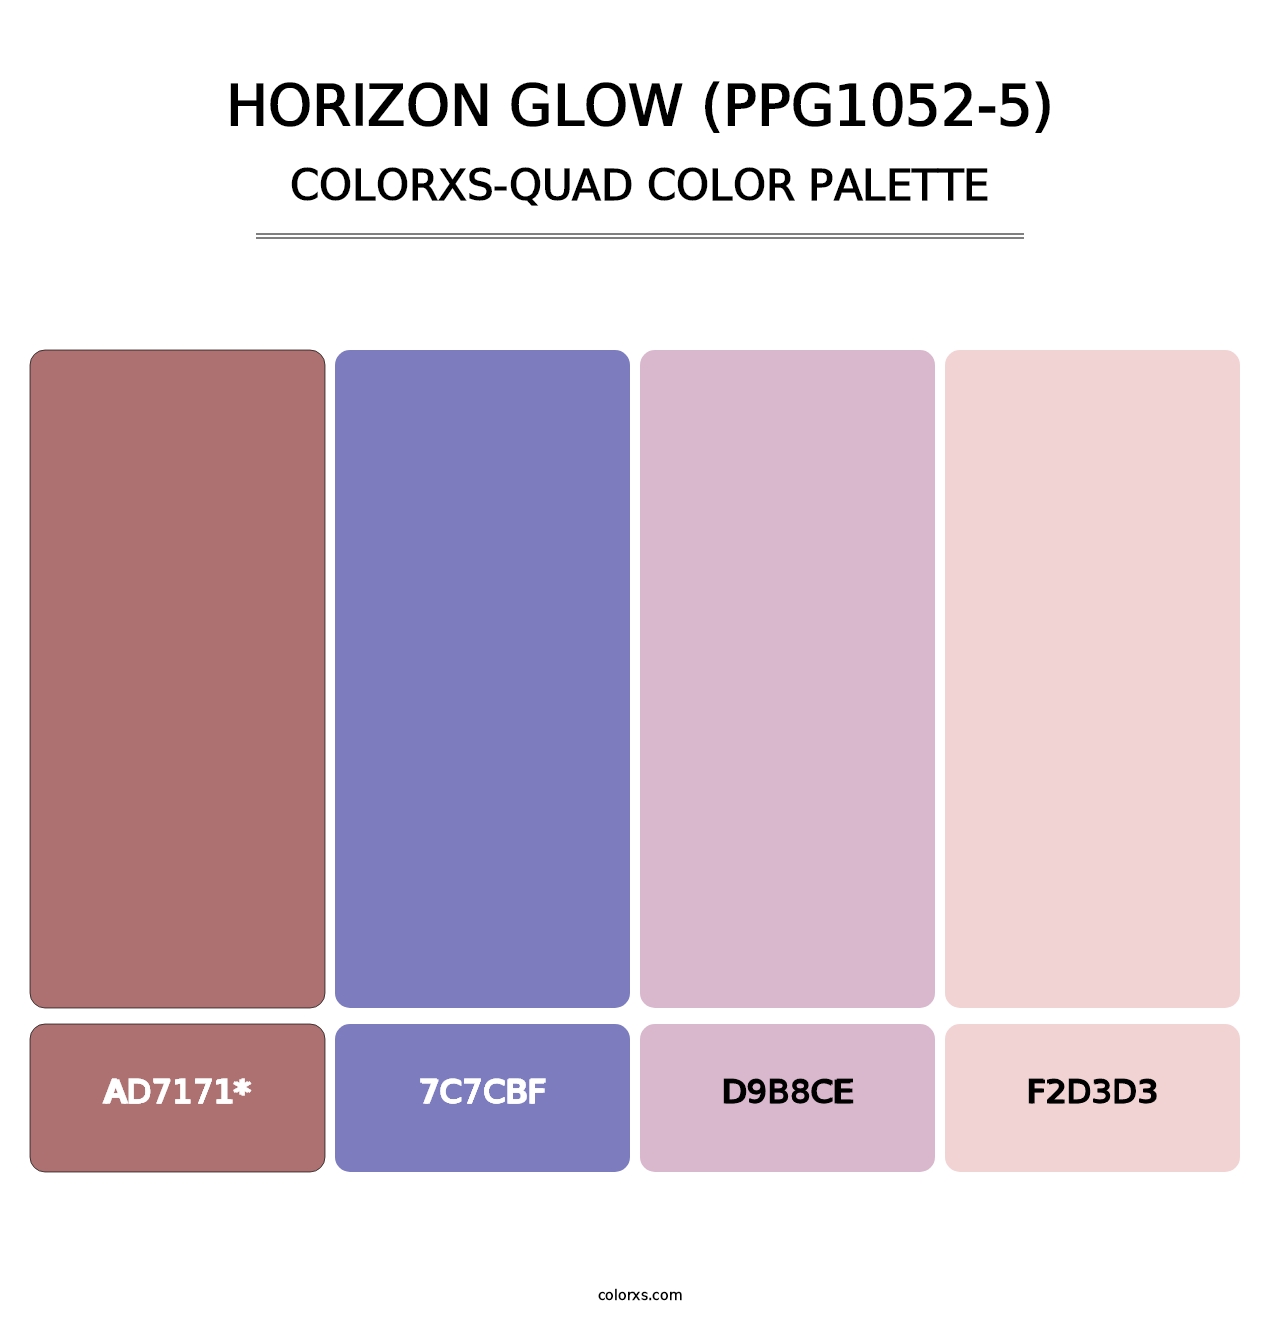 Horizon Glow (PPG1052-5) - Colorxs Quad Palette